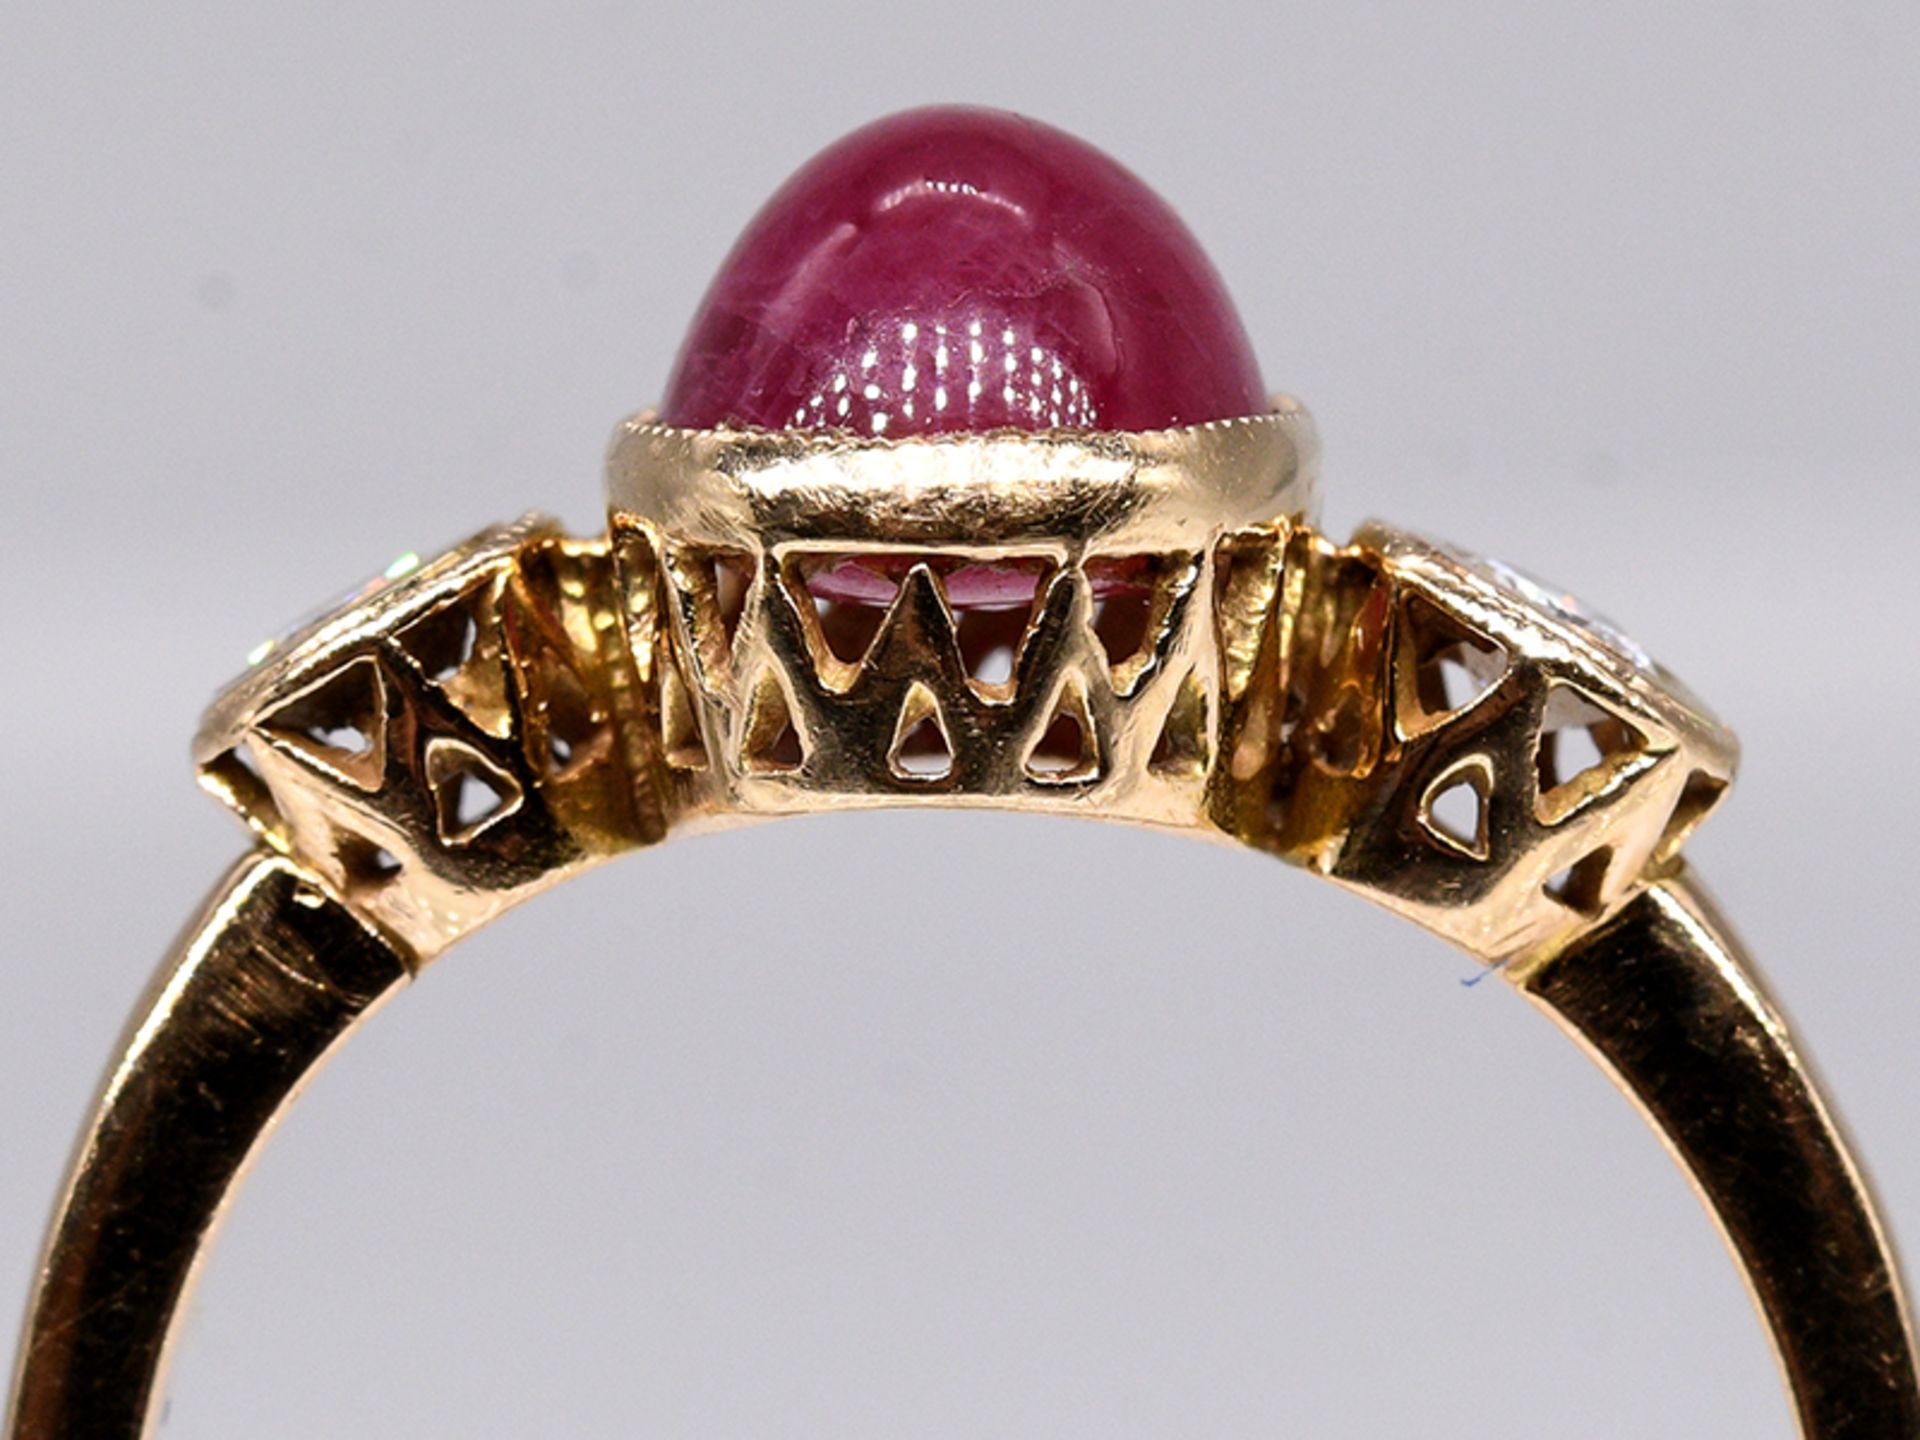 Ring mit Rubin-Cabochon und 2 Brillanten, zus. ca. 0,15 ct, 80- er Jahre. 585/- Gelbgold. - Bild 2 aus 4